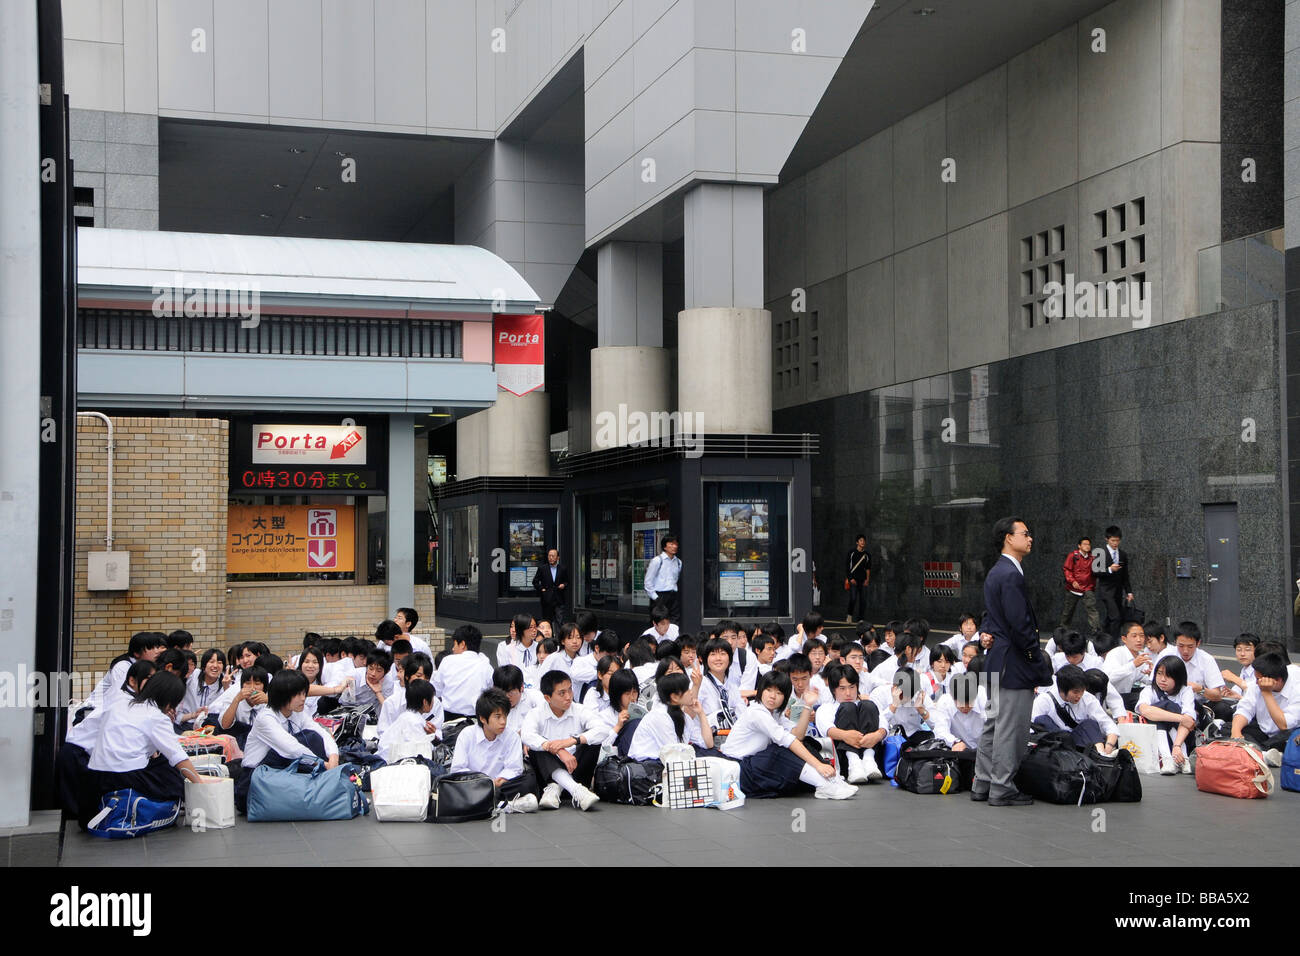 Kyoto stazione ferroviaria, gruppi di studenti in gita scolastica in attesa per il treno nella stazione di Kyoto a Kyoto, Giappone, Asia Foto Stock